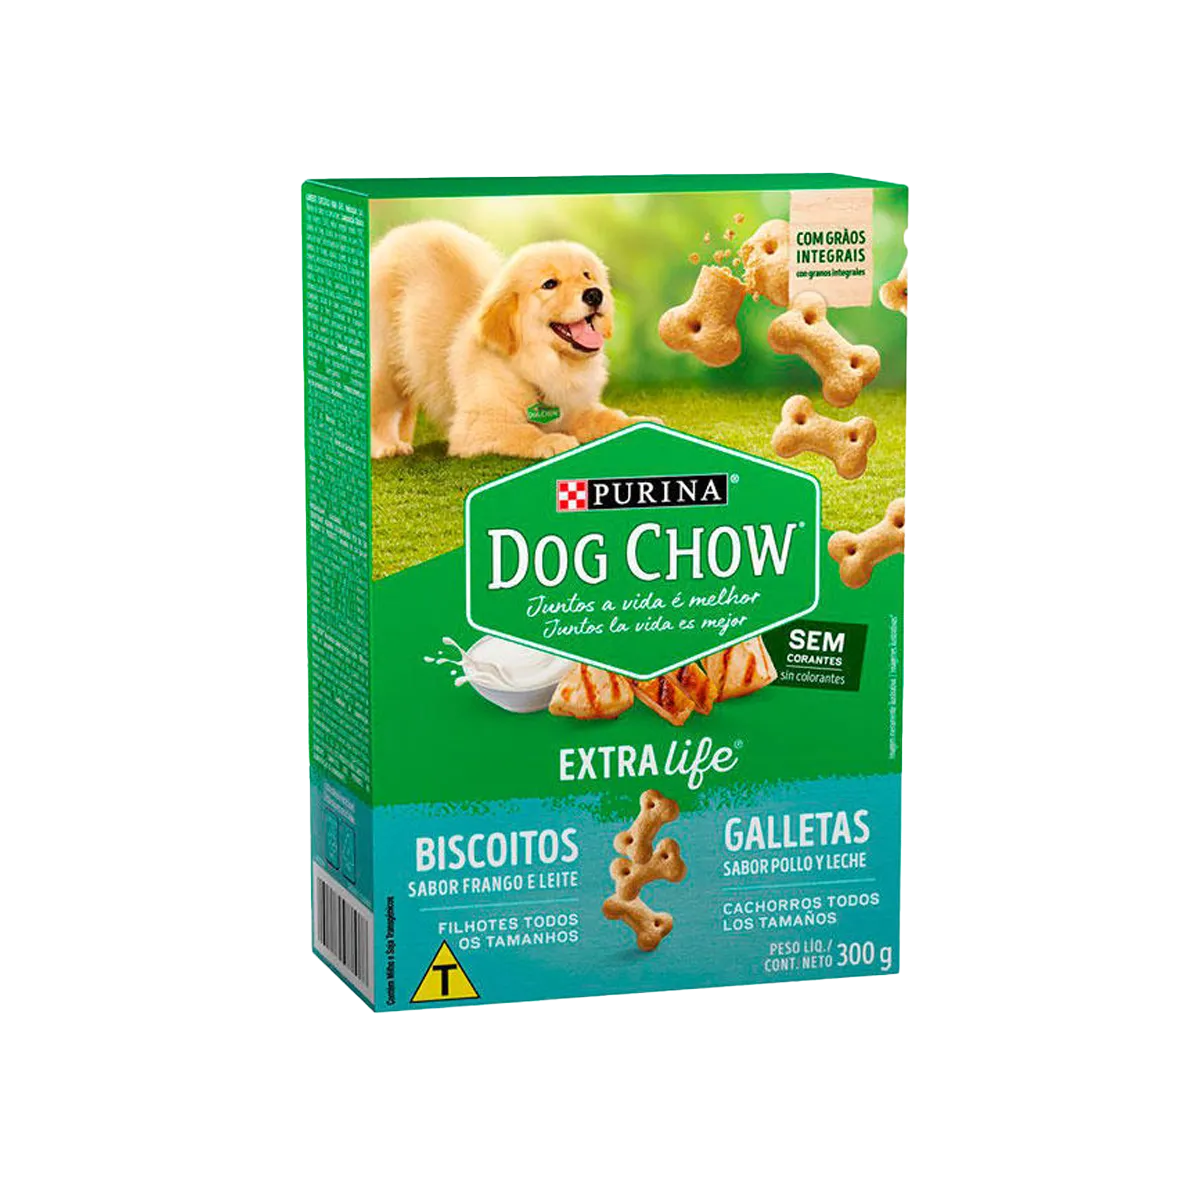 Purina-DogChow-galletas-pollo